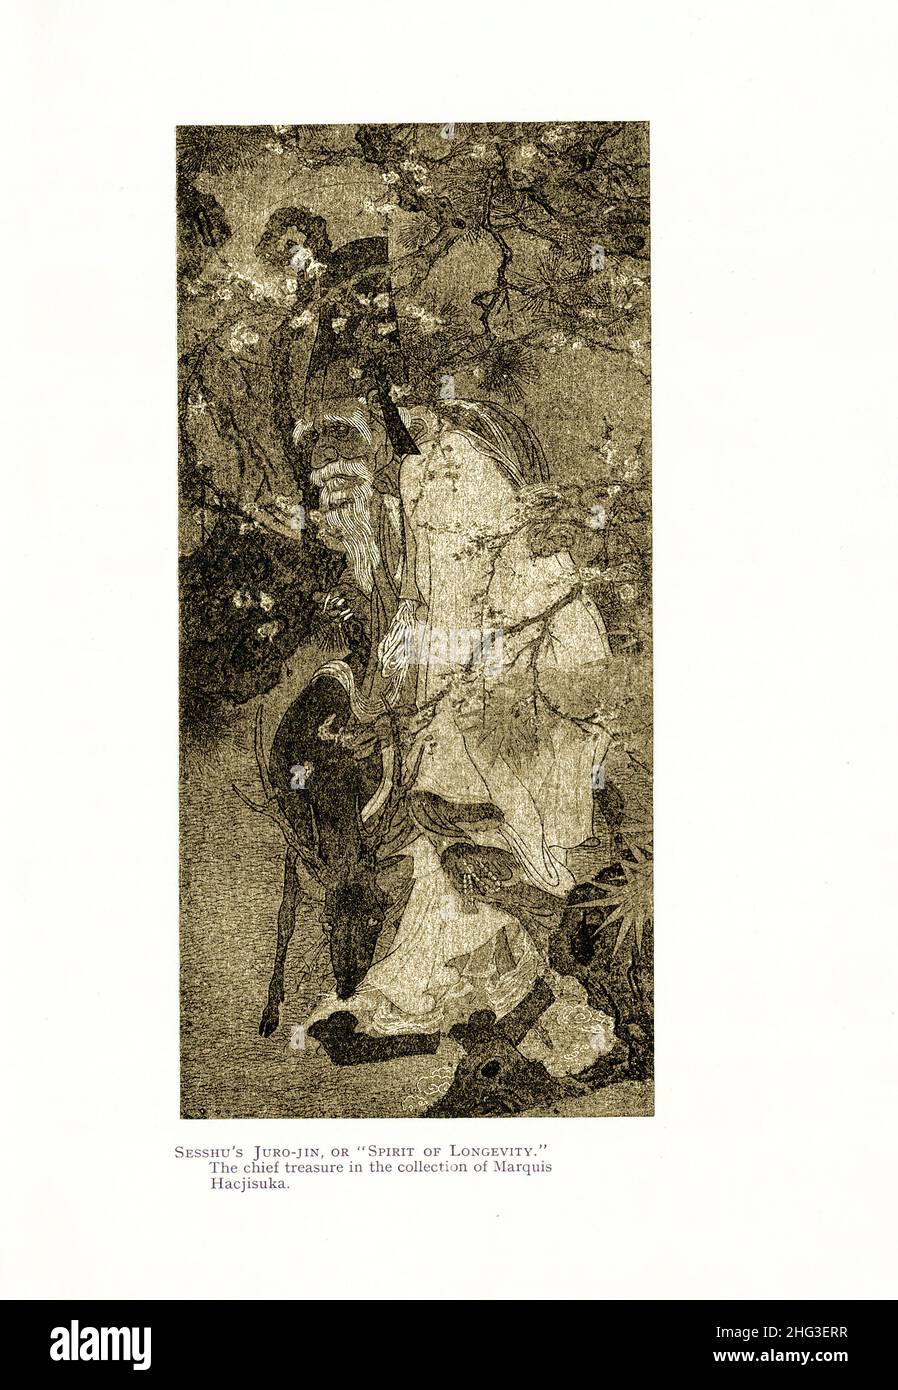 Peinture médiévale japonaise : Juro-Jin, ou « Spirit of Longevity ».Par Sesshu.Reproduction de l'illustration de livre de 1912 Sesshū Tōyō (connu sous le nom d'Oda Tōyō, U Banque D'Images